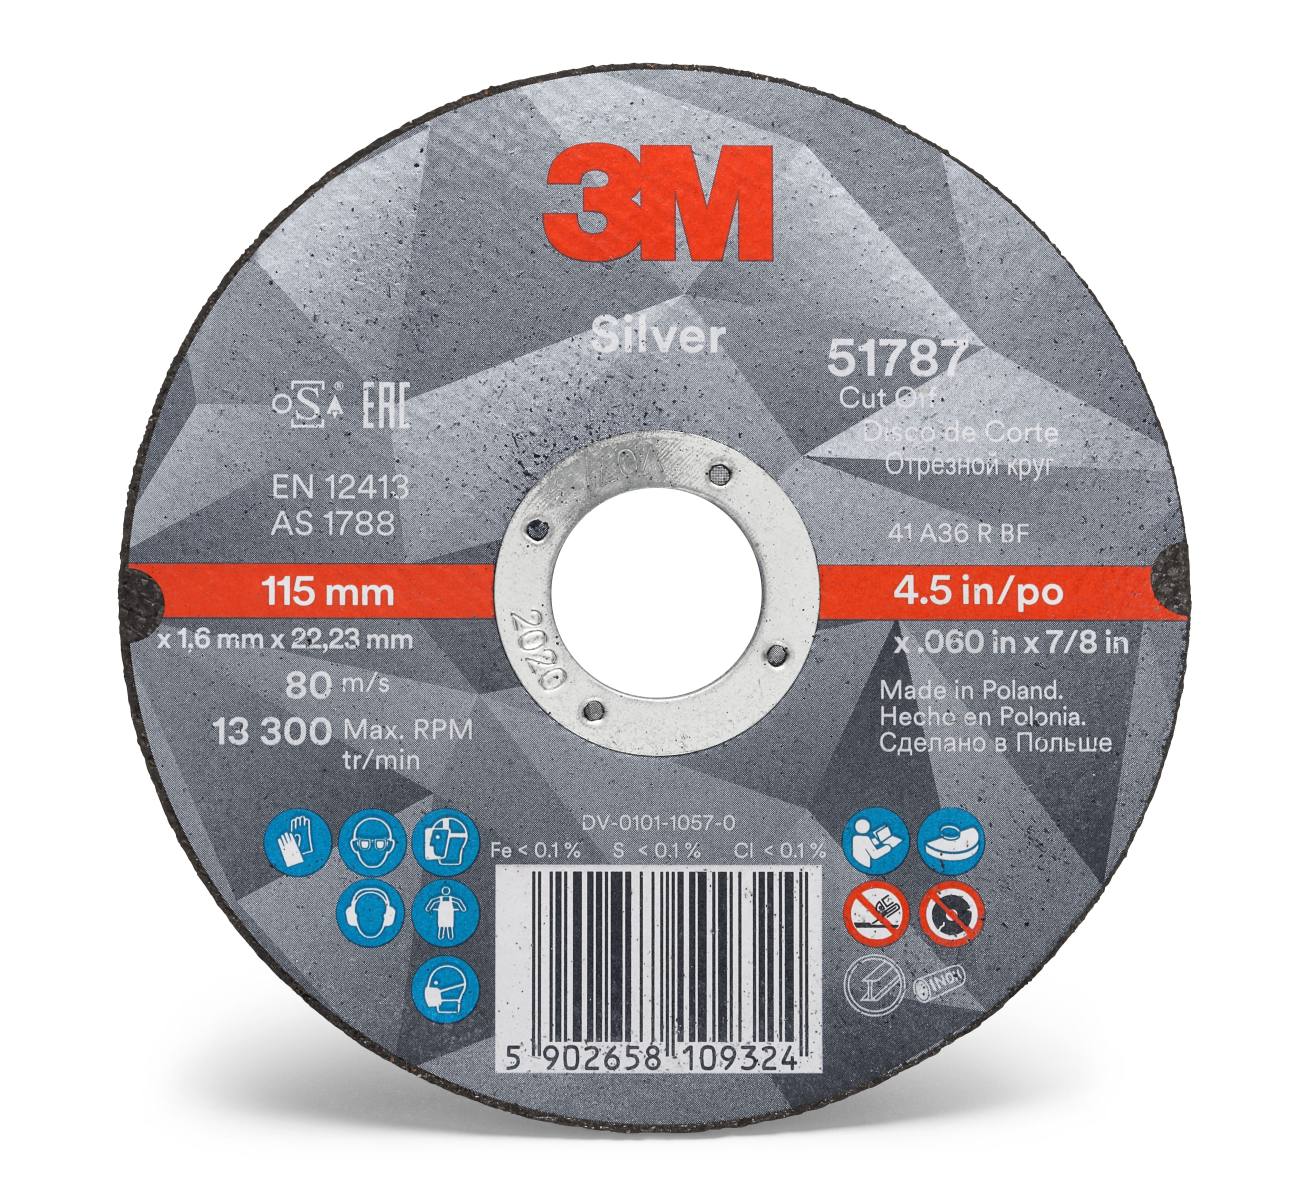 3M Silver Cut-Off Wheel cutting-off wheel, 100 mm, 1.3 mm, 16 mm, T41, 51776